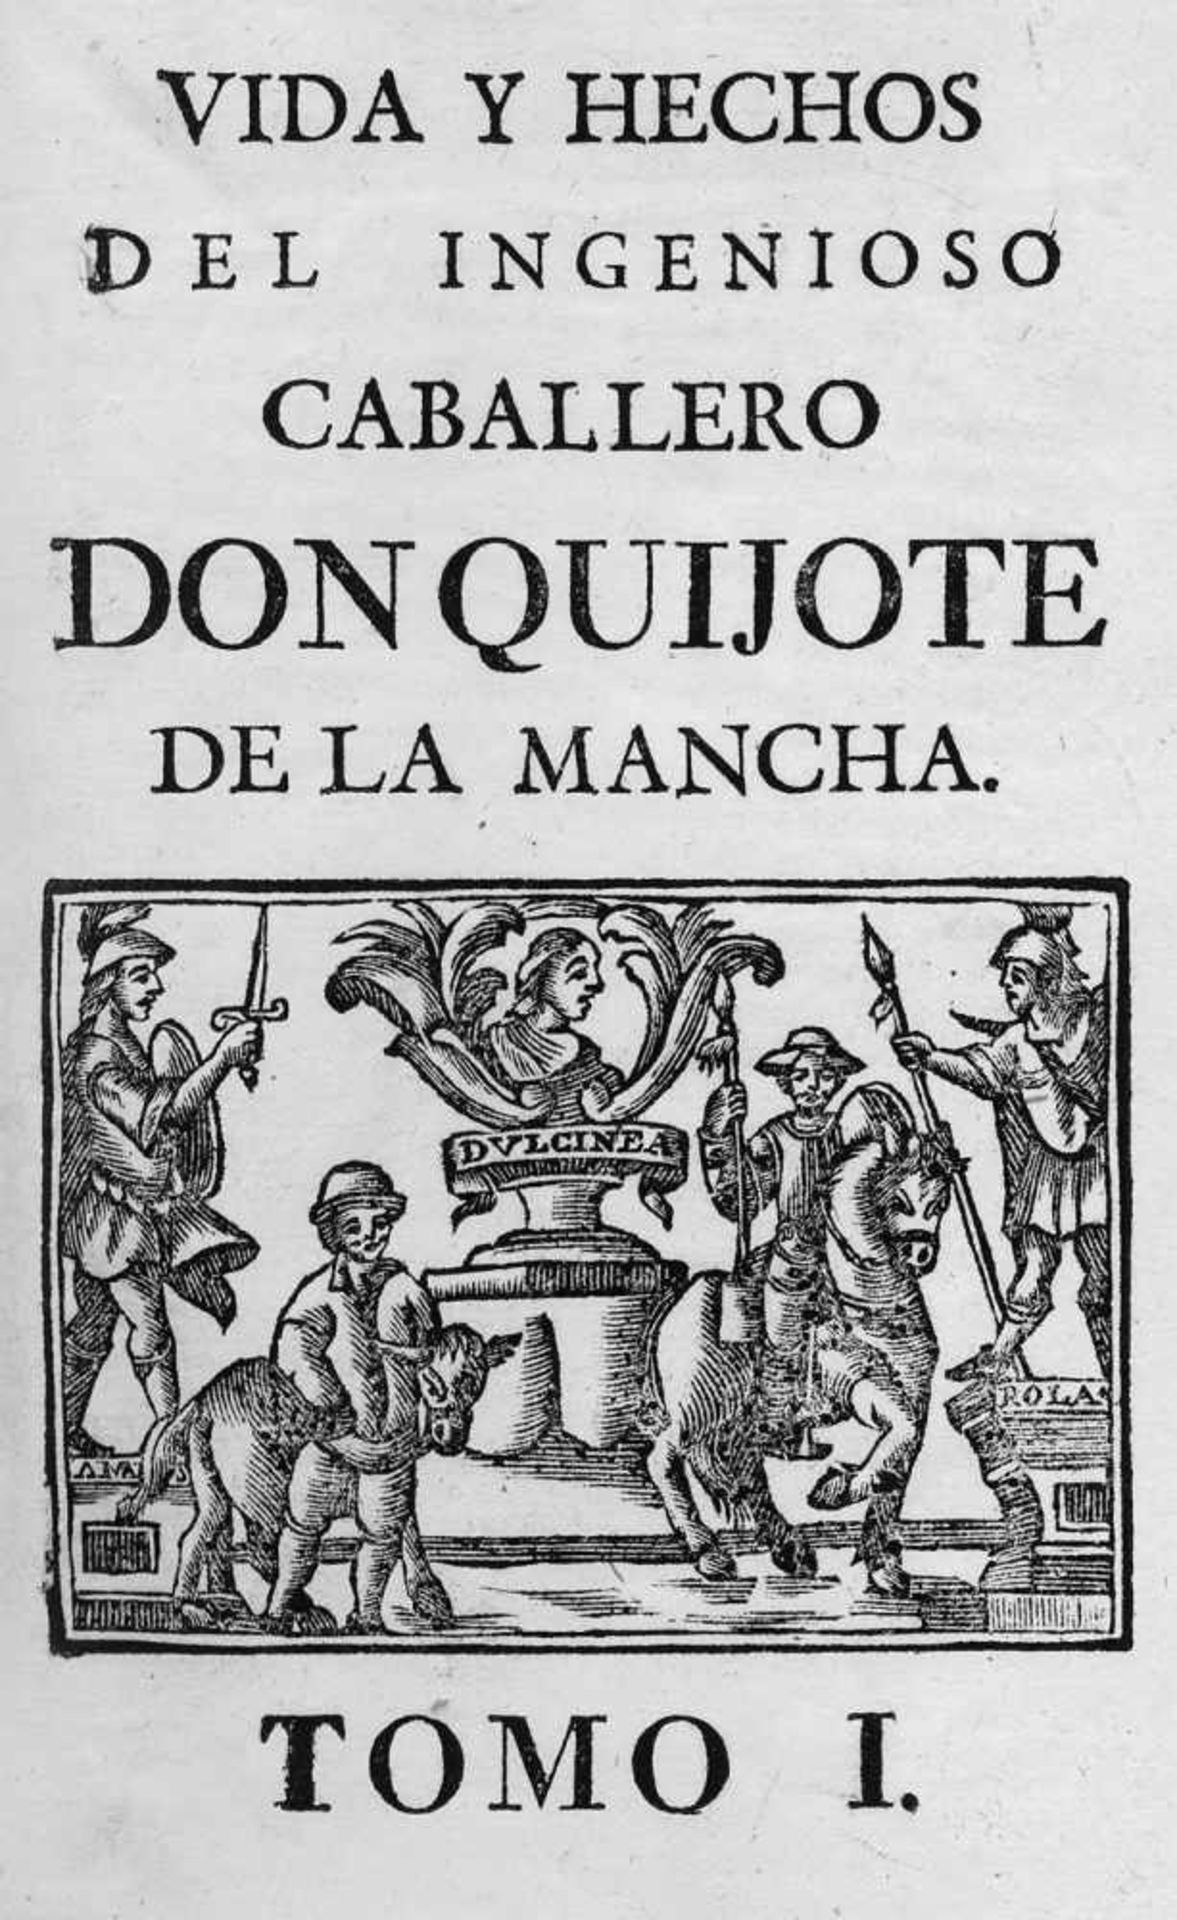 Cervantes Saavedra, Miguel de: Vida y Hechos del ingenioso caballero Don Quijote de la